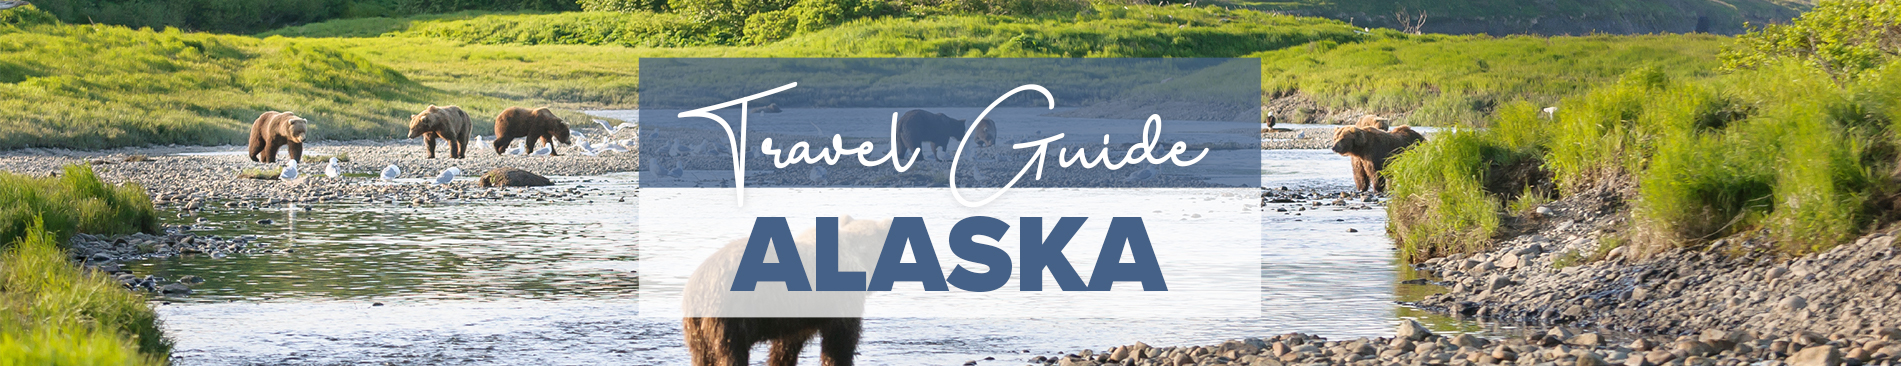 National Parks of Alaska